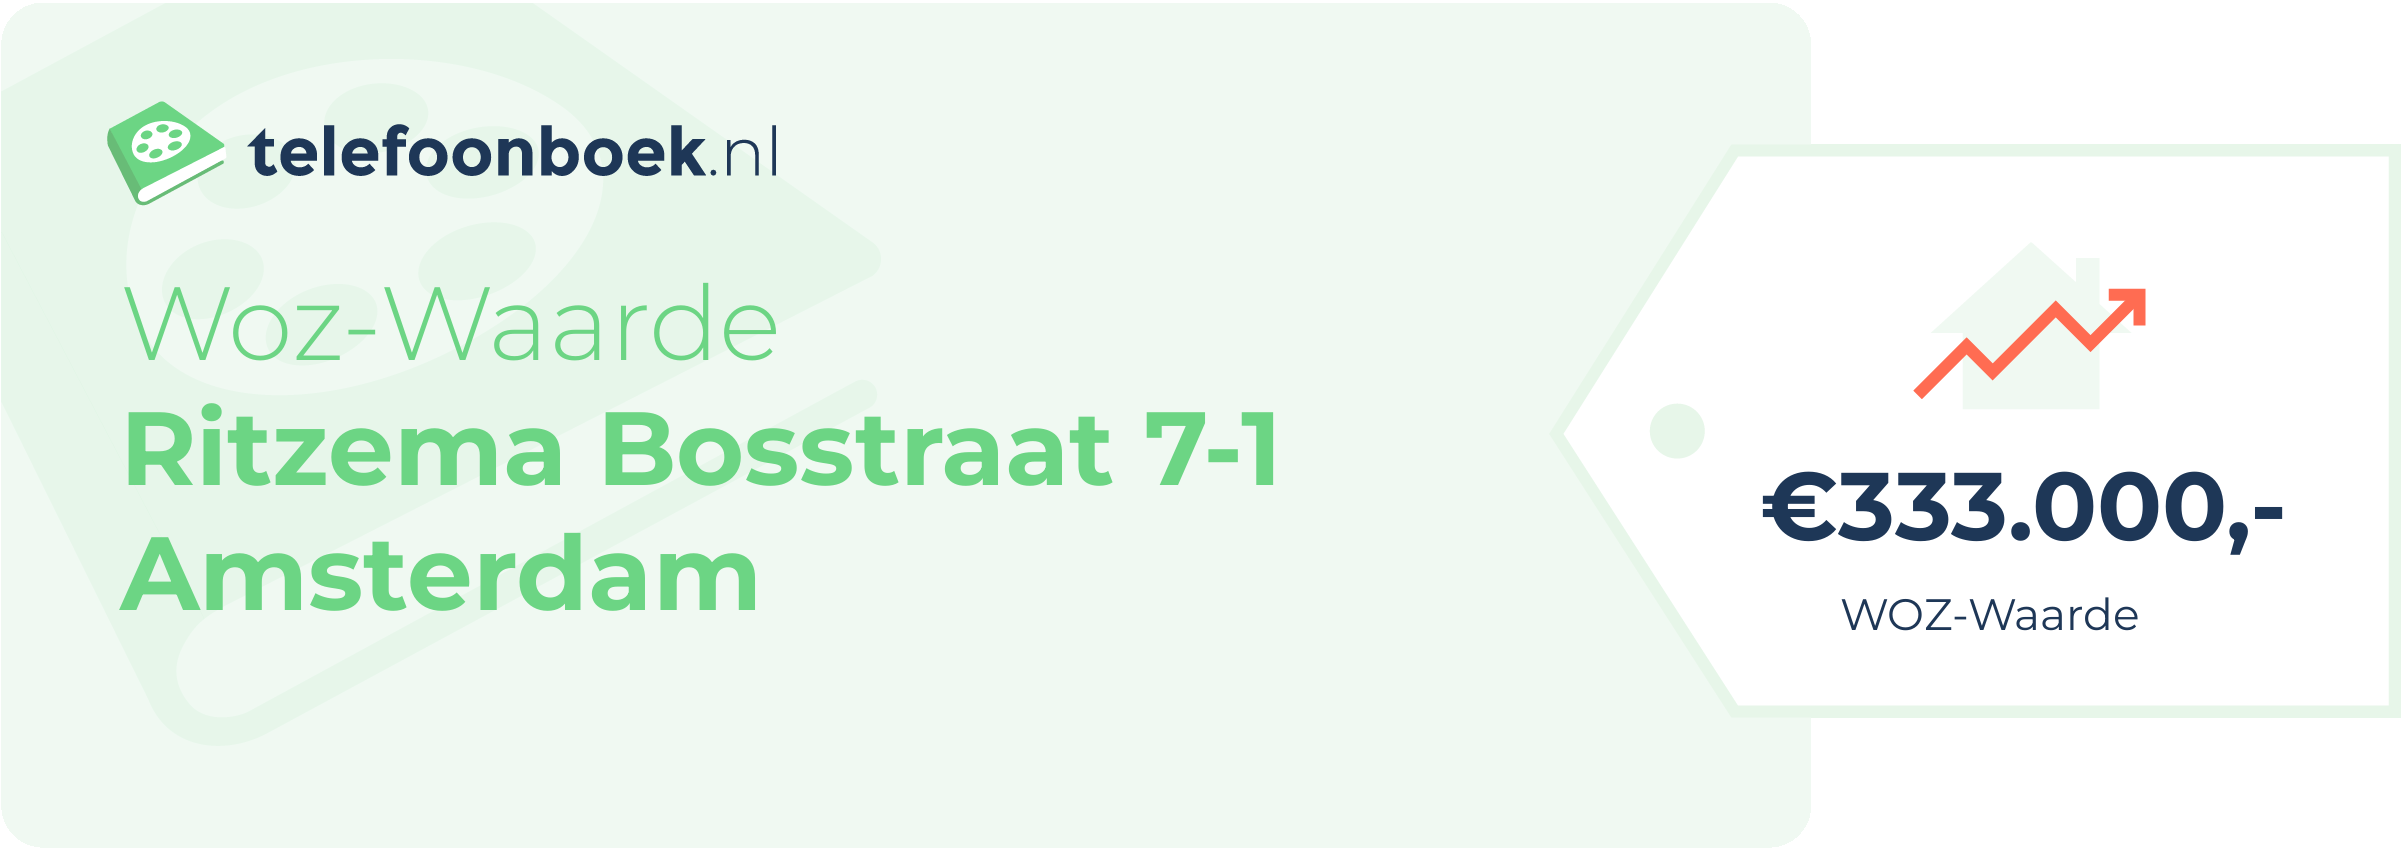 WOZ-waarde Ritzema Bosstraat 7-1 Amsterdam